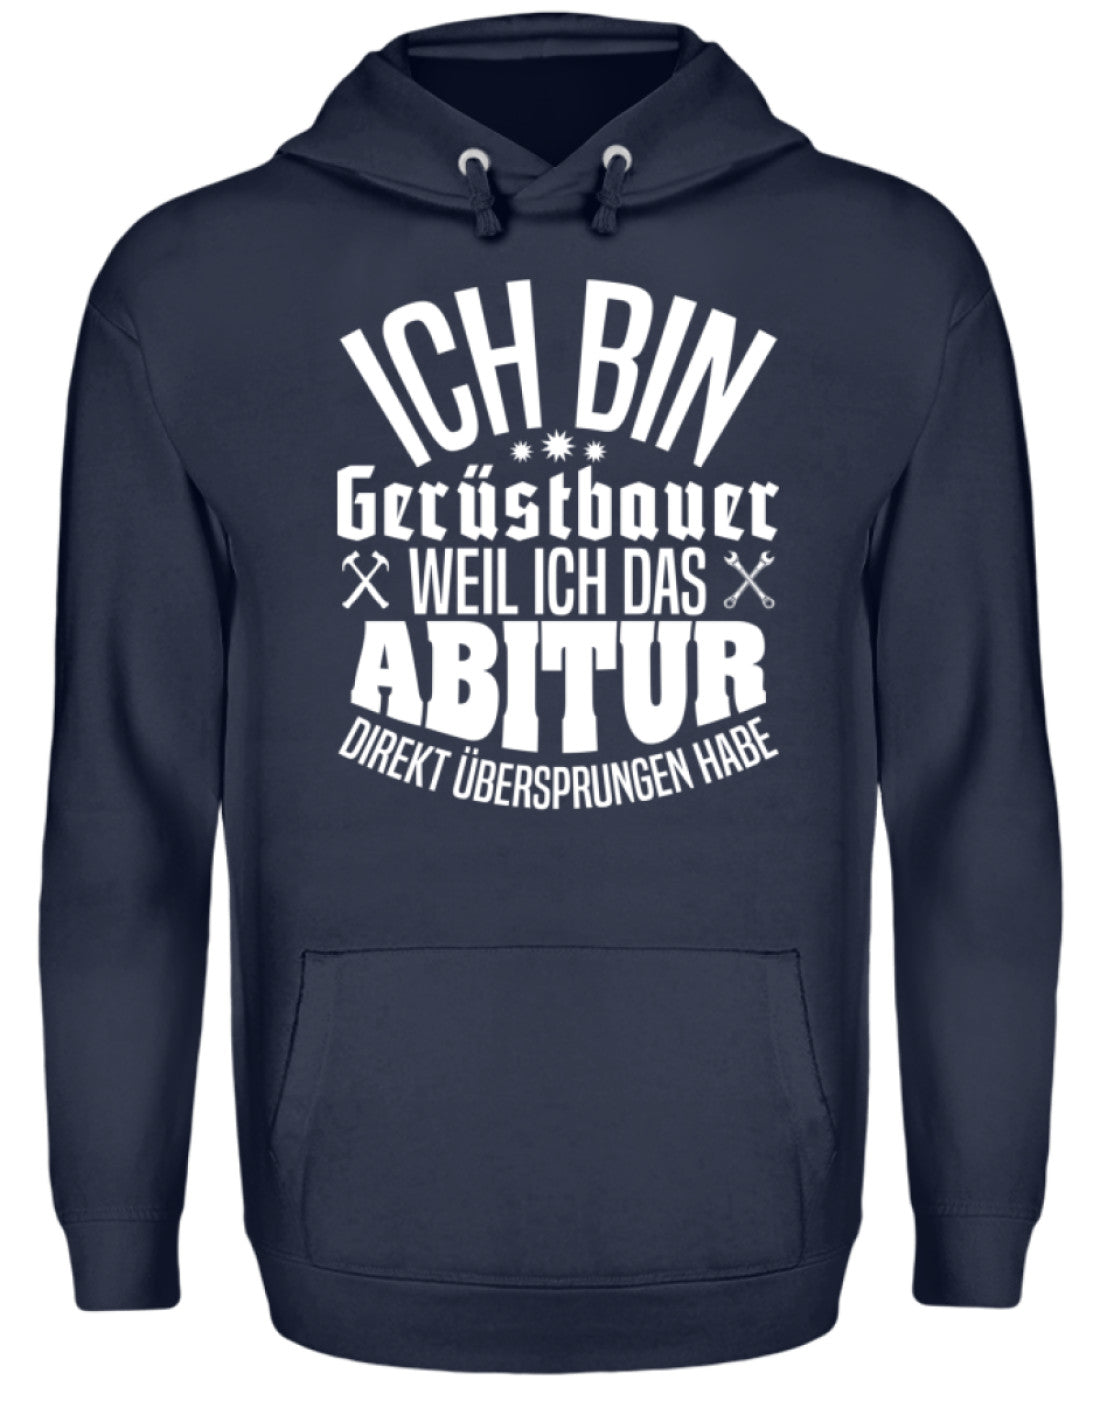 Gerüstbauer / Abitur €34.95 Gerüstbauer - Shop >>